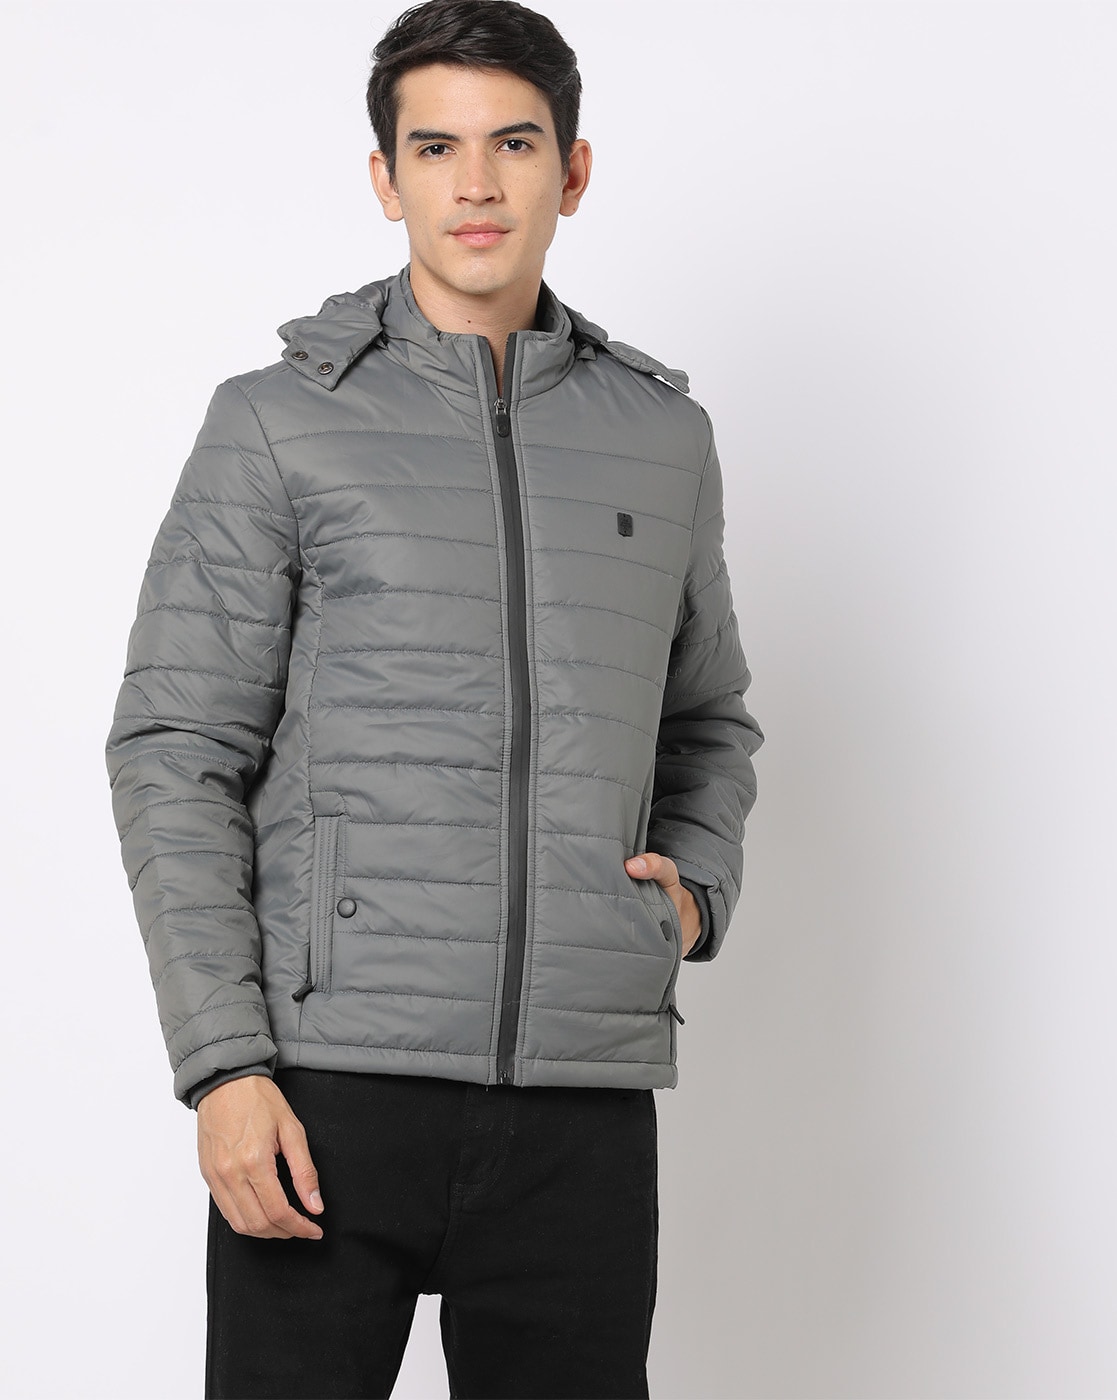 Flipkart jacket haul 2023 || best jacket from Flipkart || Flipkart jacket  shopping | jacket for men - YouTube